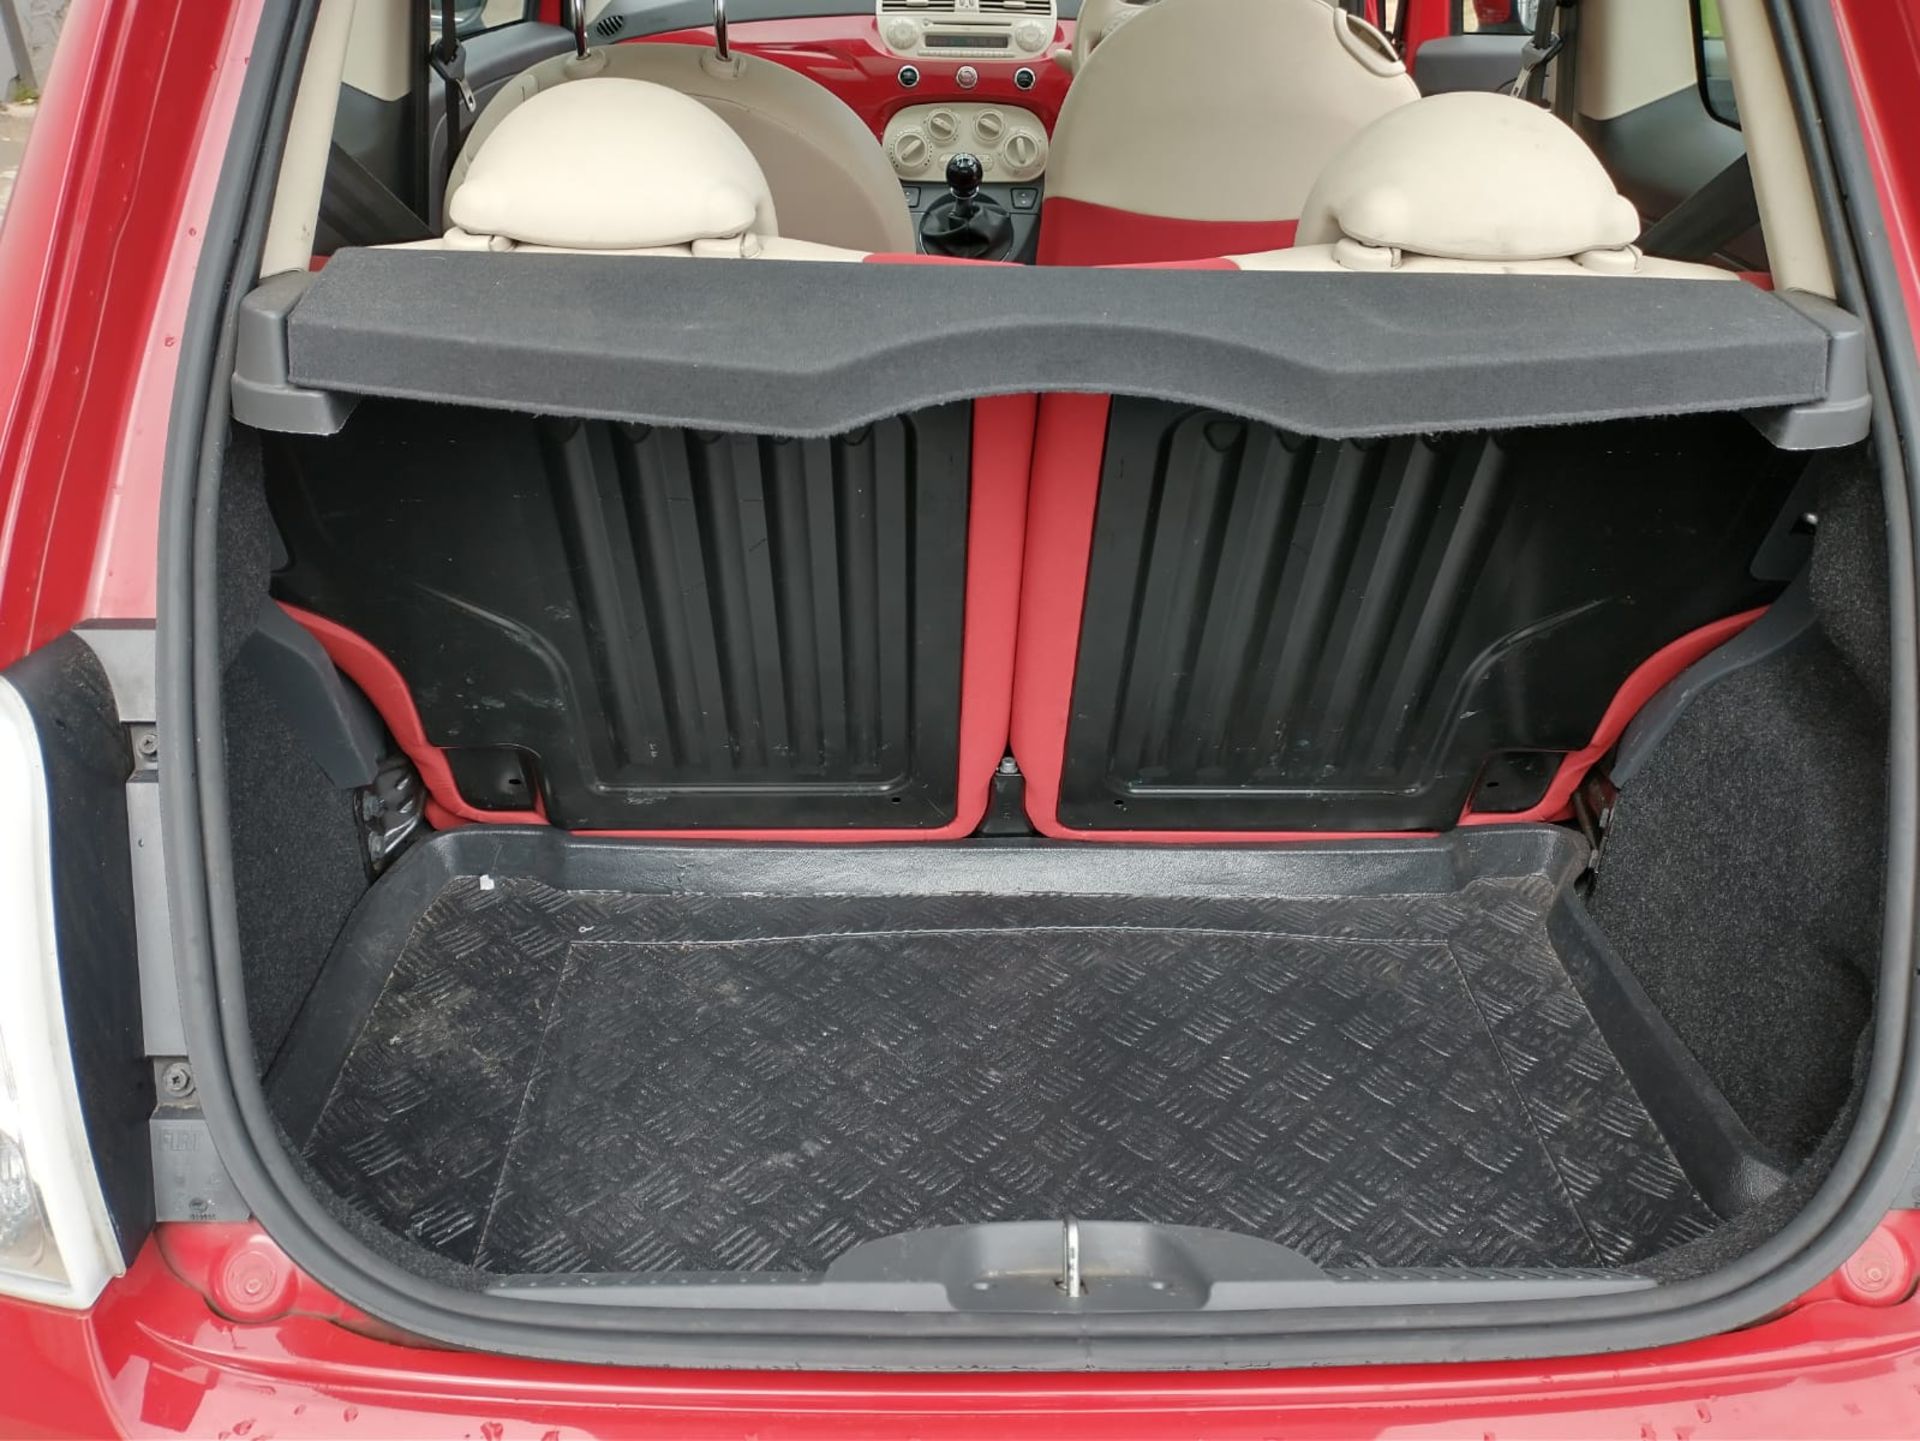 2013 Fiat 500 1.2 3Dr hatchback - Image 7 of 13